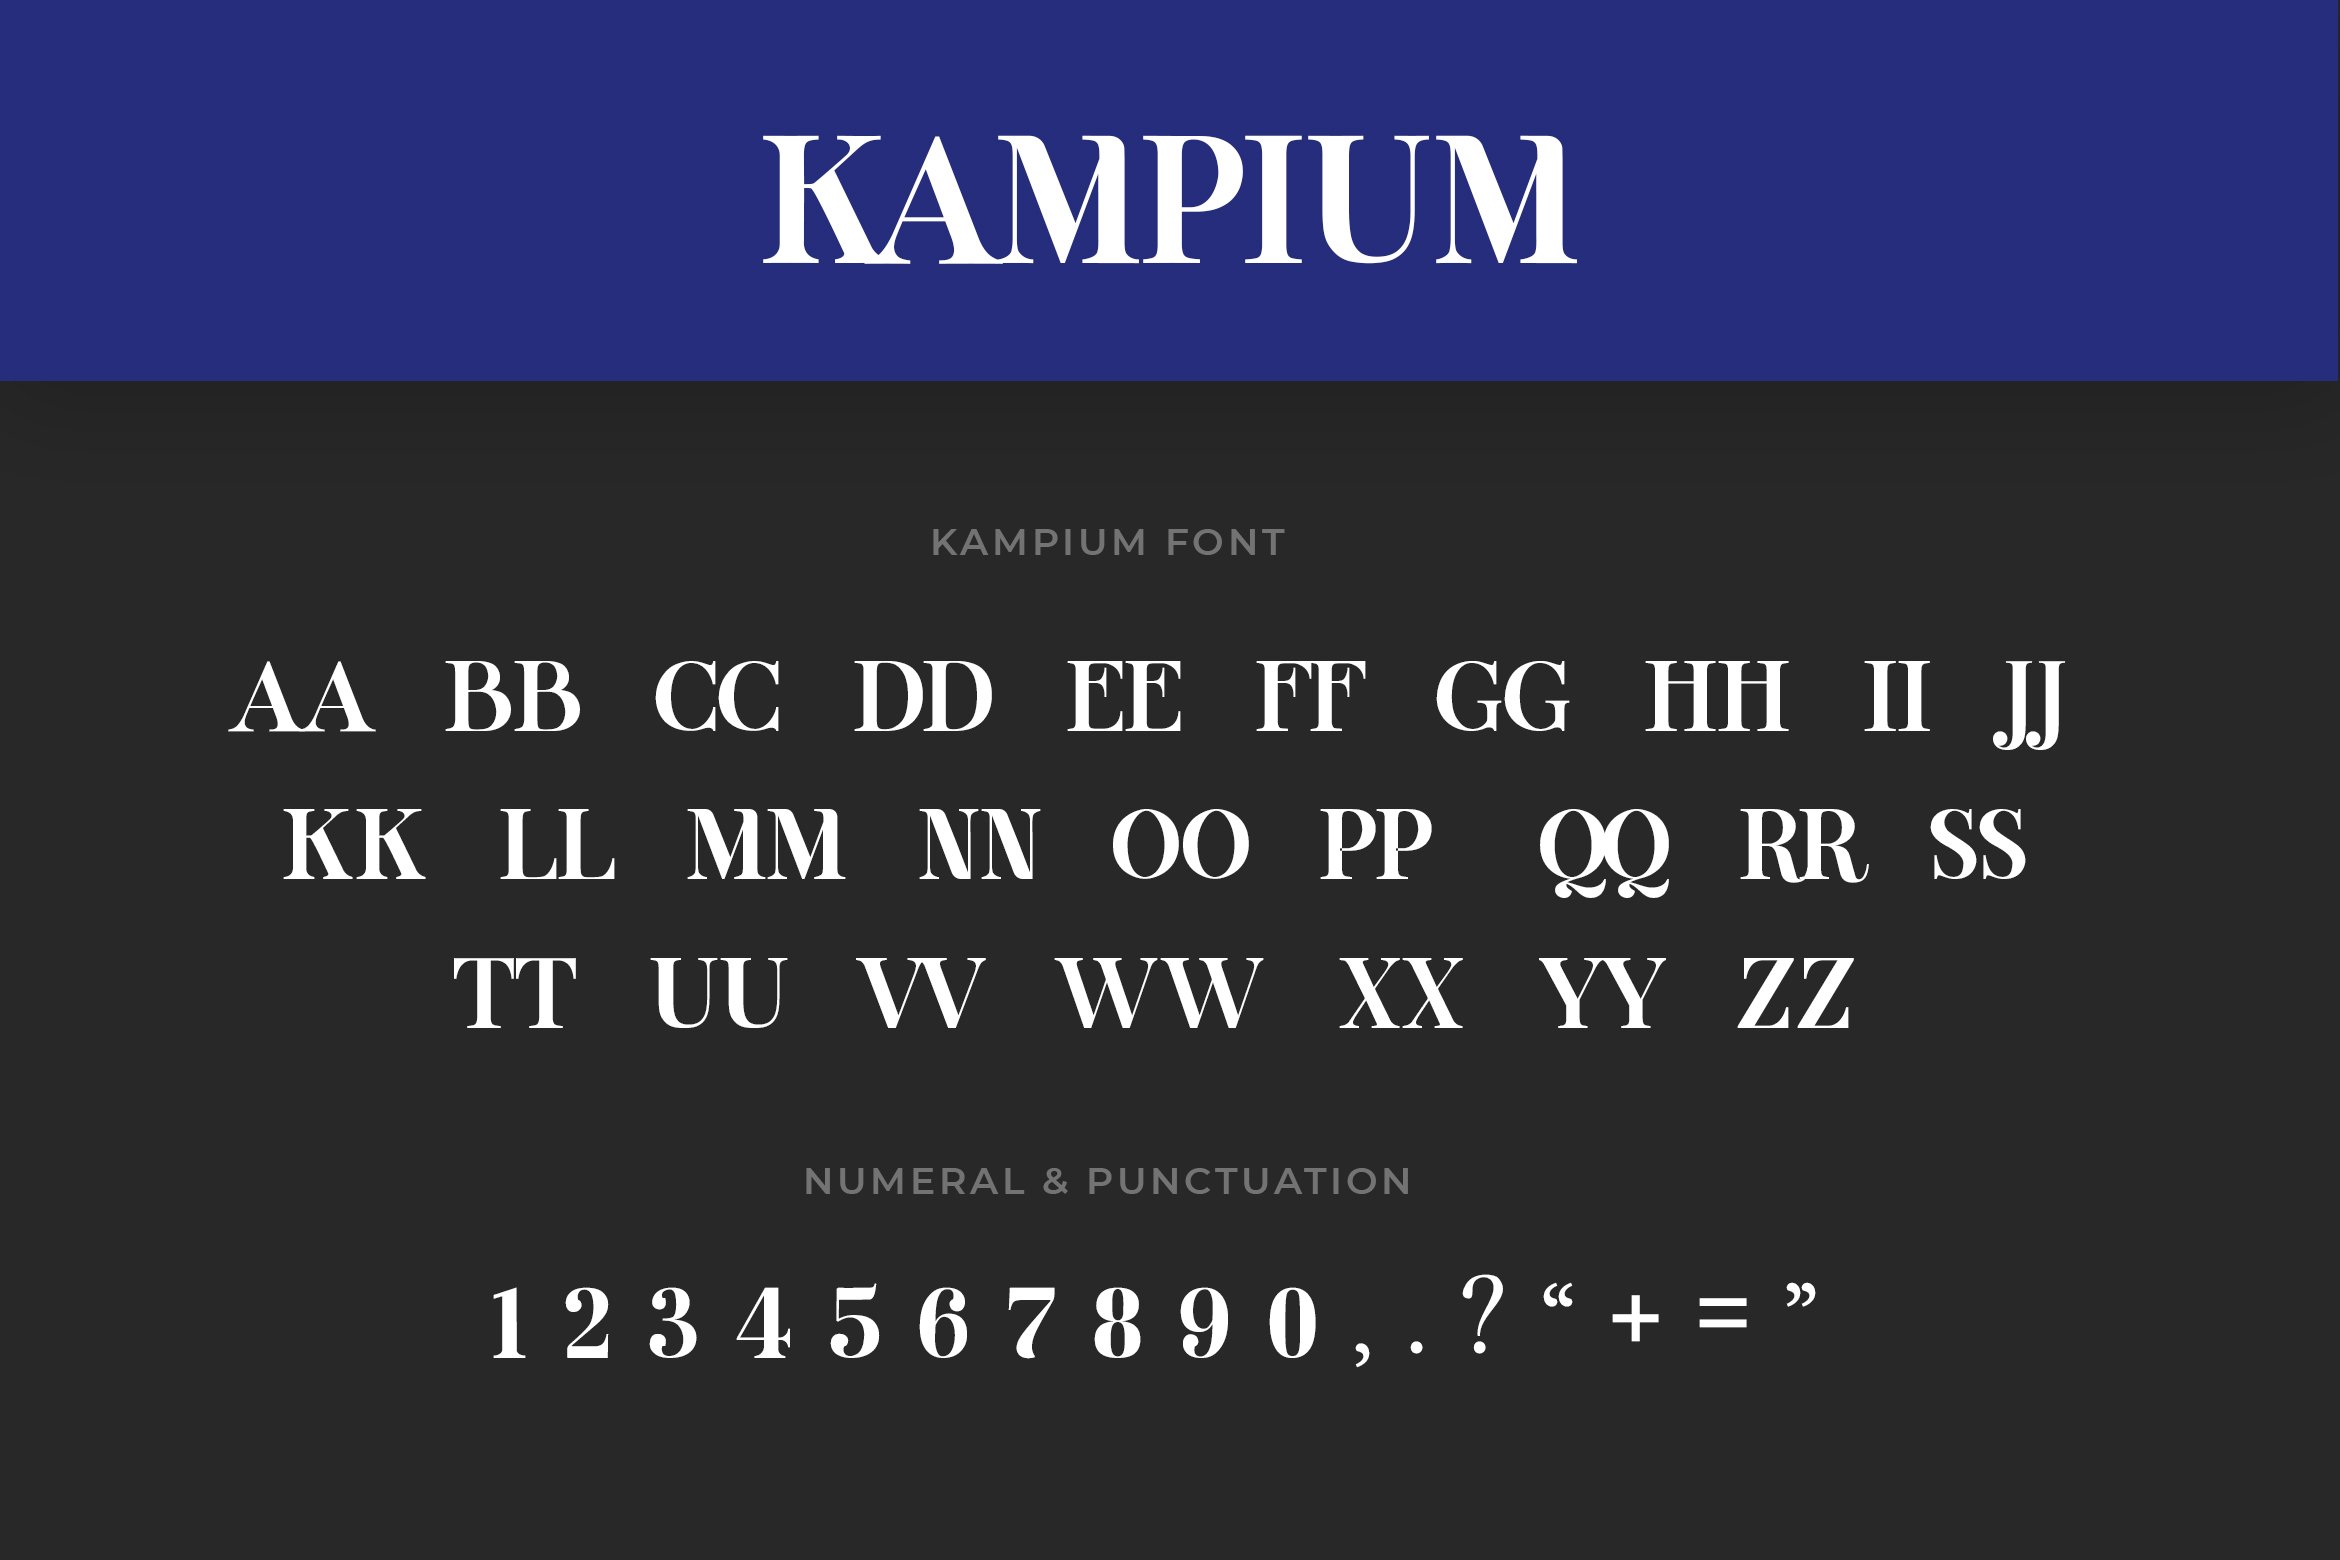 General view of Kampium font.